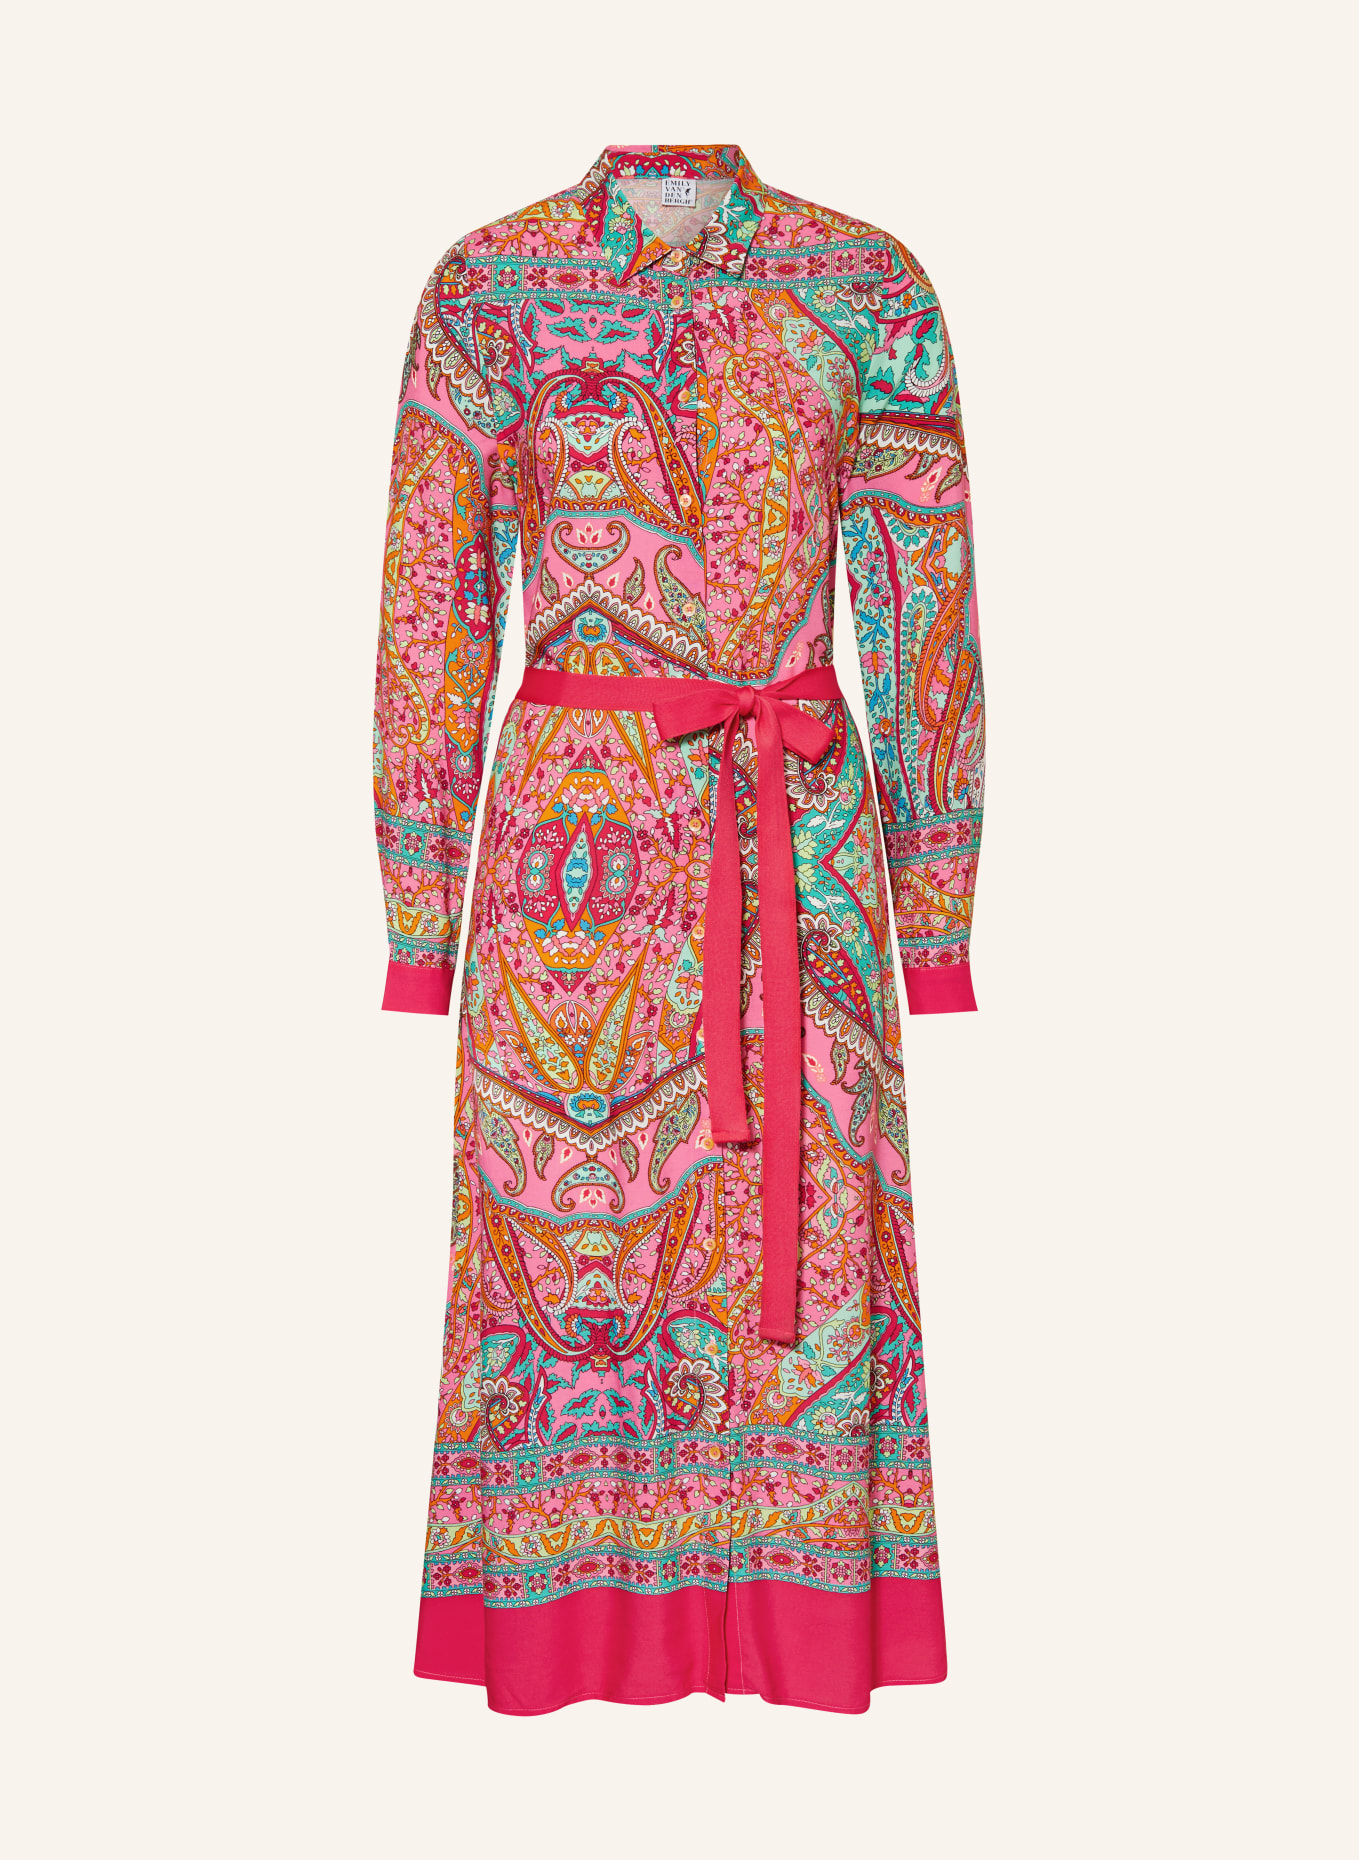 Emily VAN DEN BERGH Shirt dress, Color: PINK/ MINT/ ORANGE (Image 1)